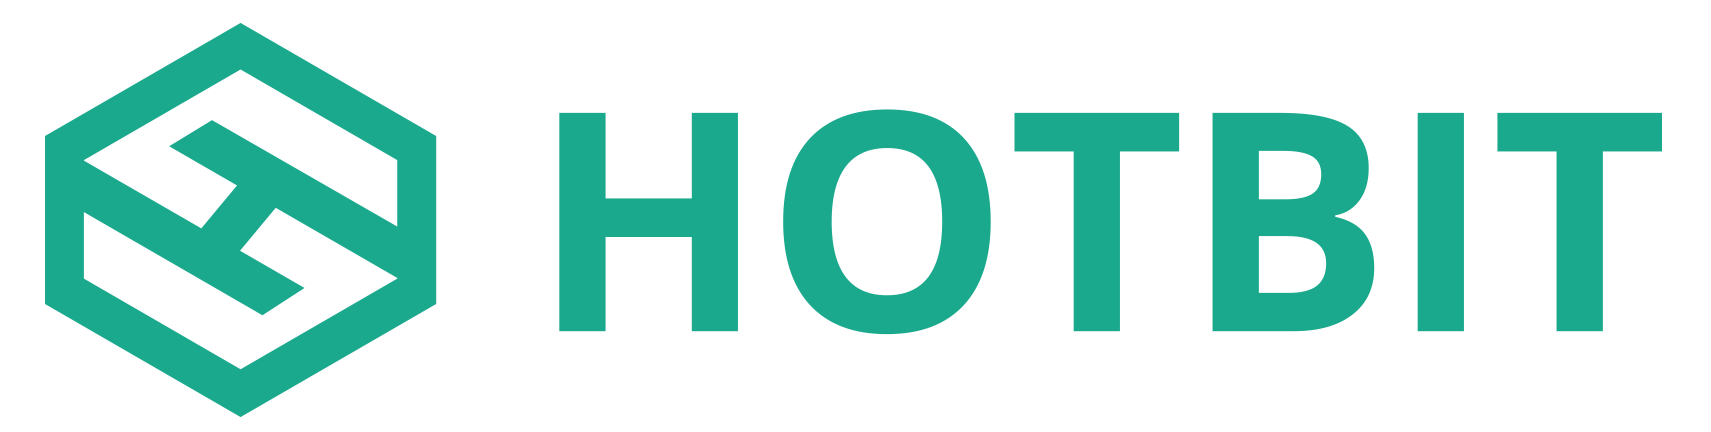 HotBit.png